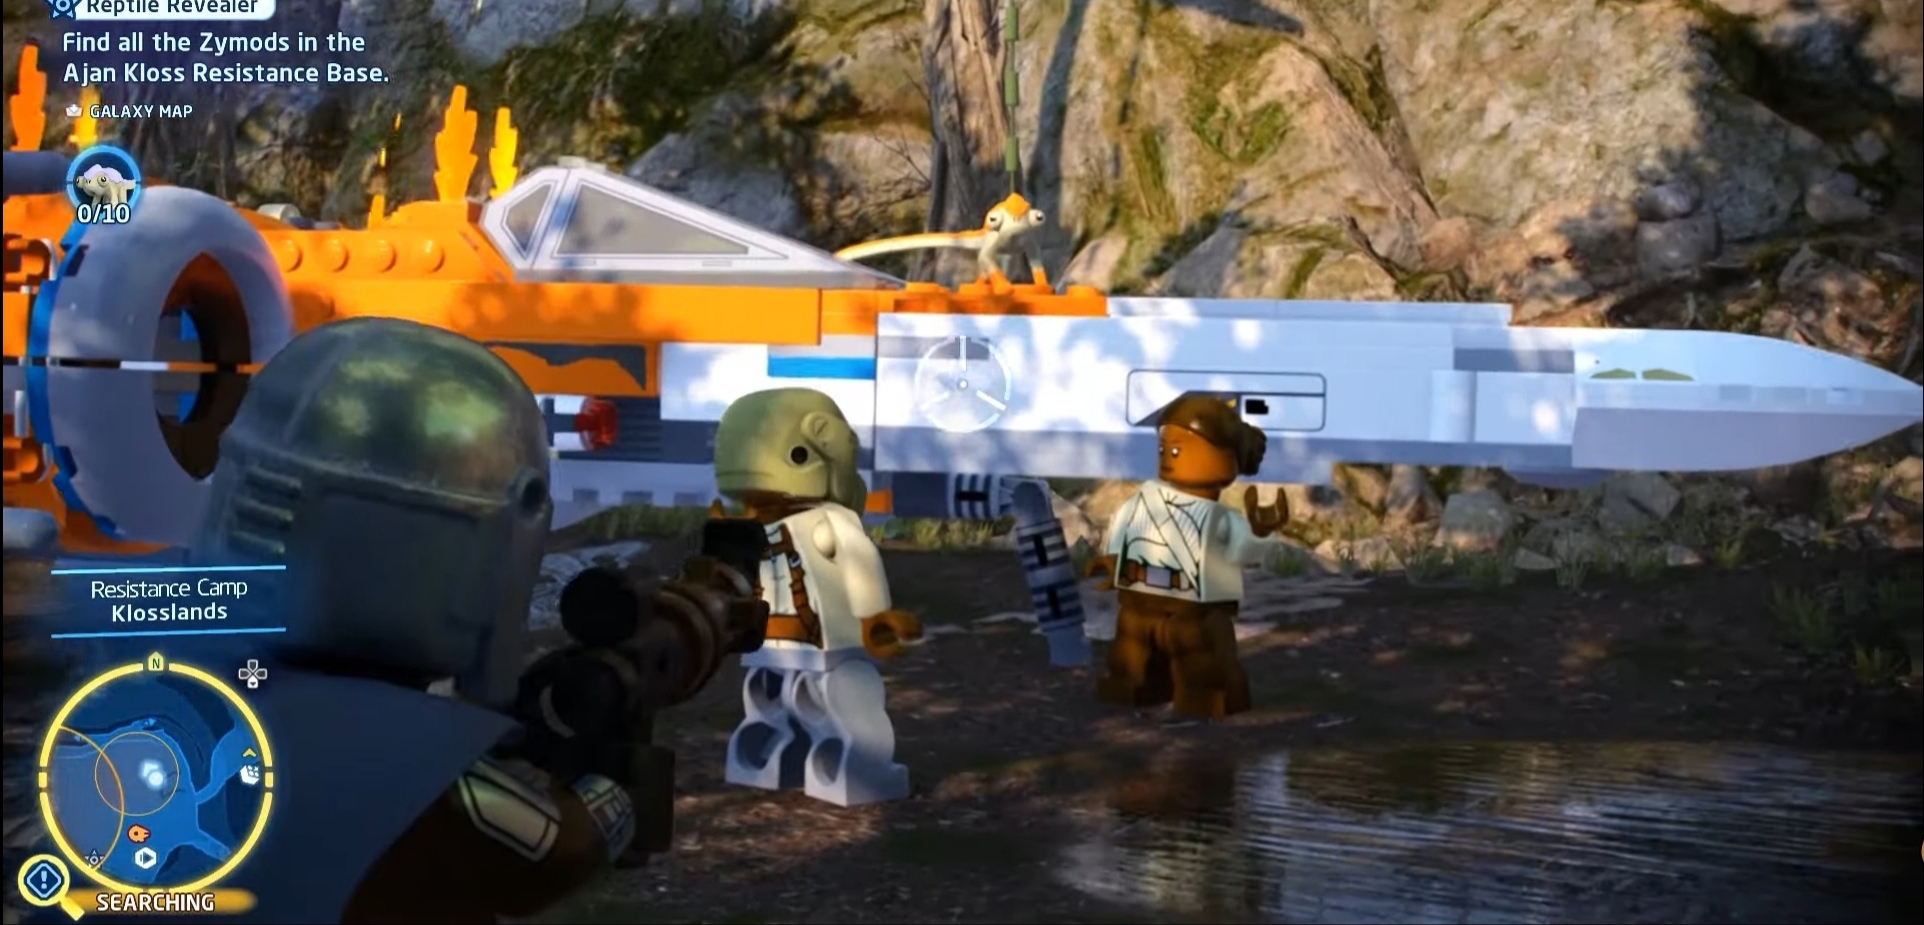 LEGO Star Wars the Skywalker Saga Zymod Locations